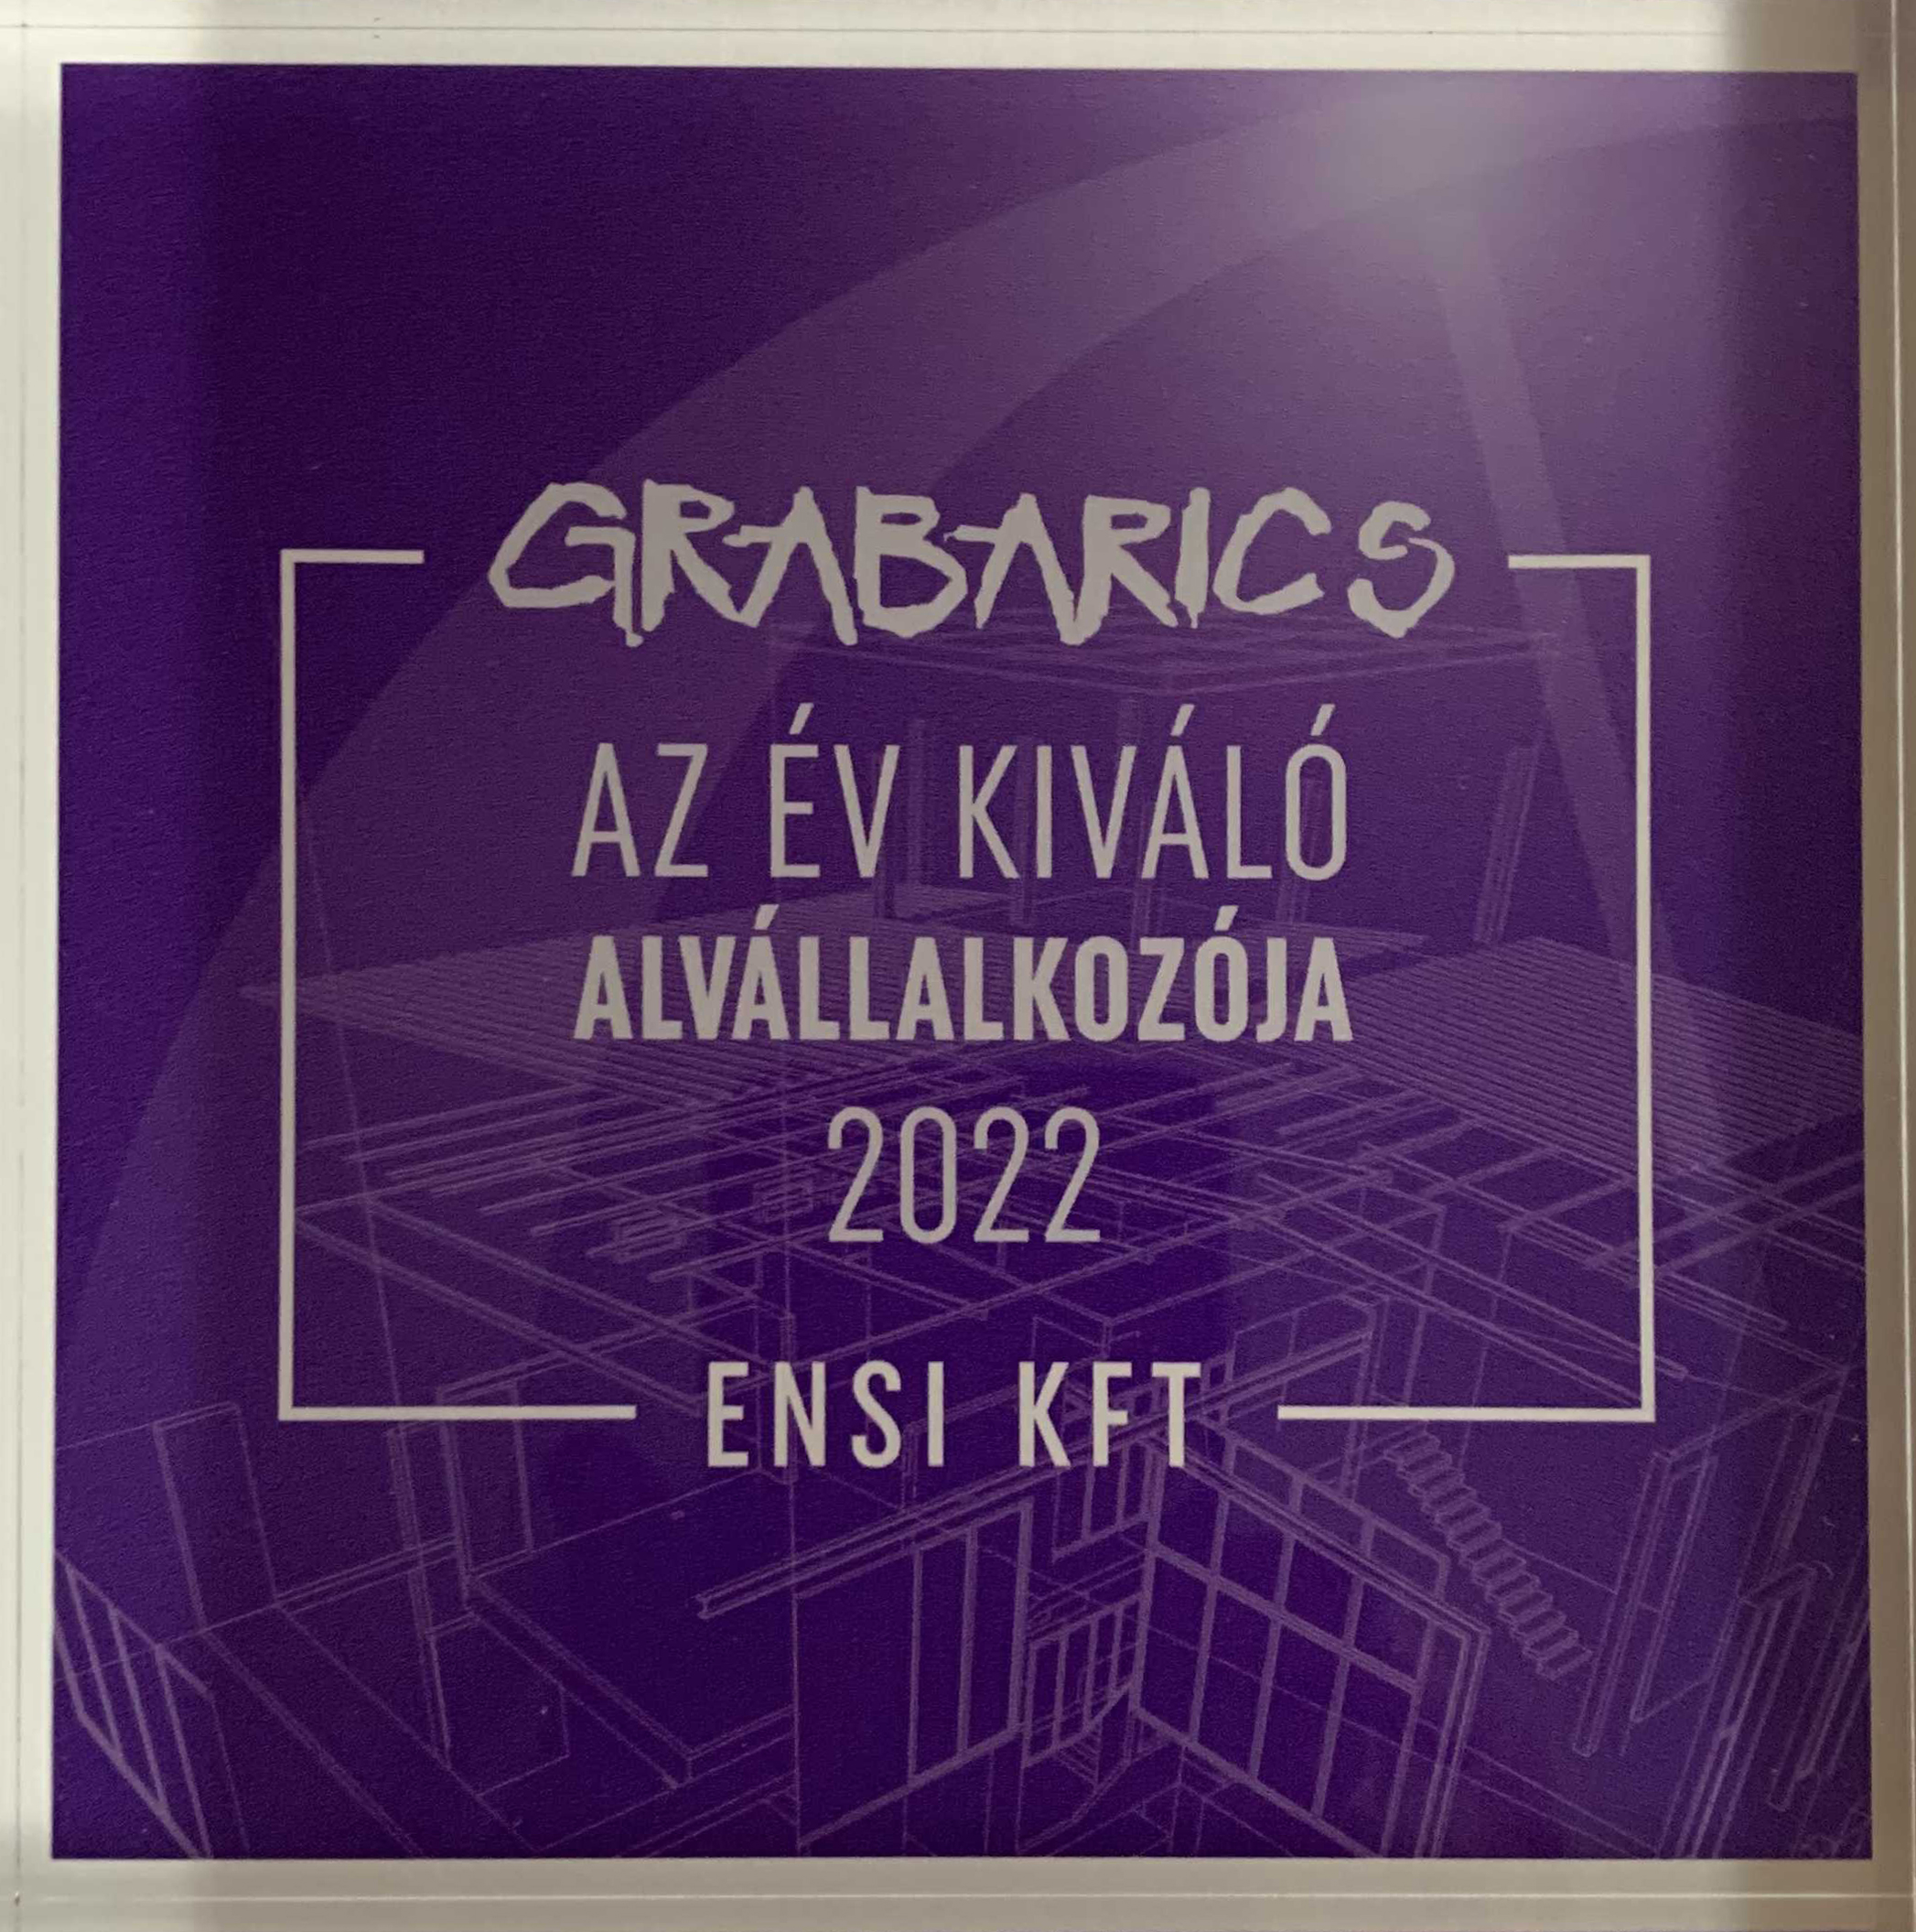 Az év kiválója alvállalkozója - elismerés, 2022, Grabarics Kft.